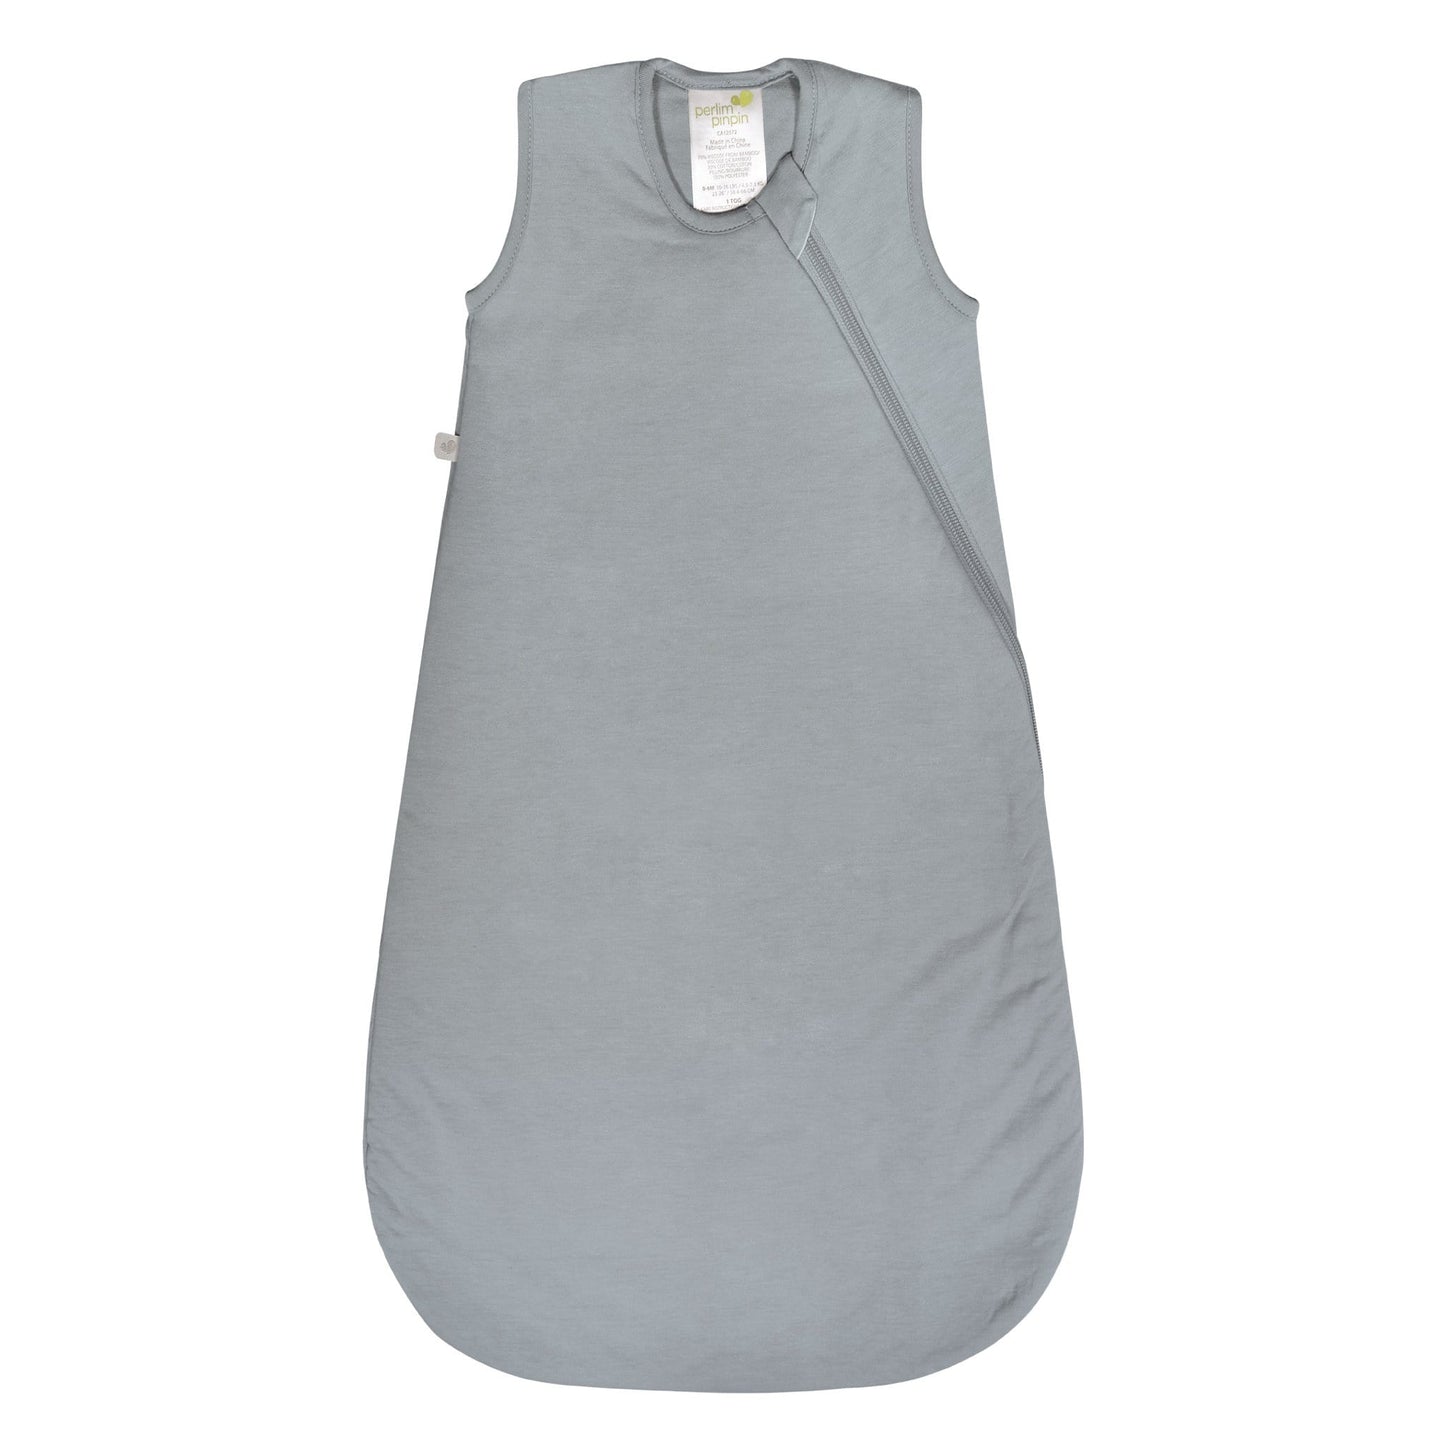 Quilted bamboo sleep bag - Pebble Gray (1.0 tog)